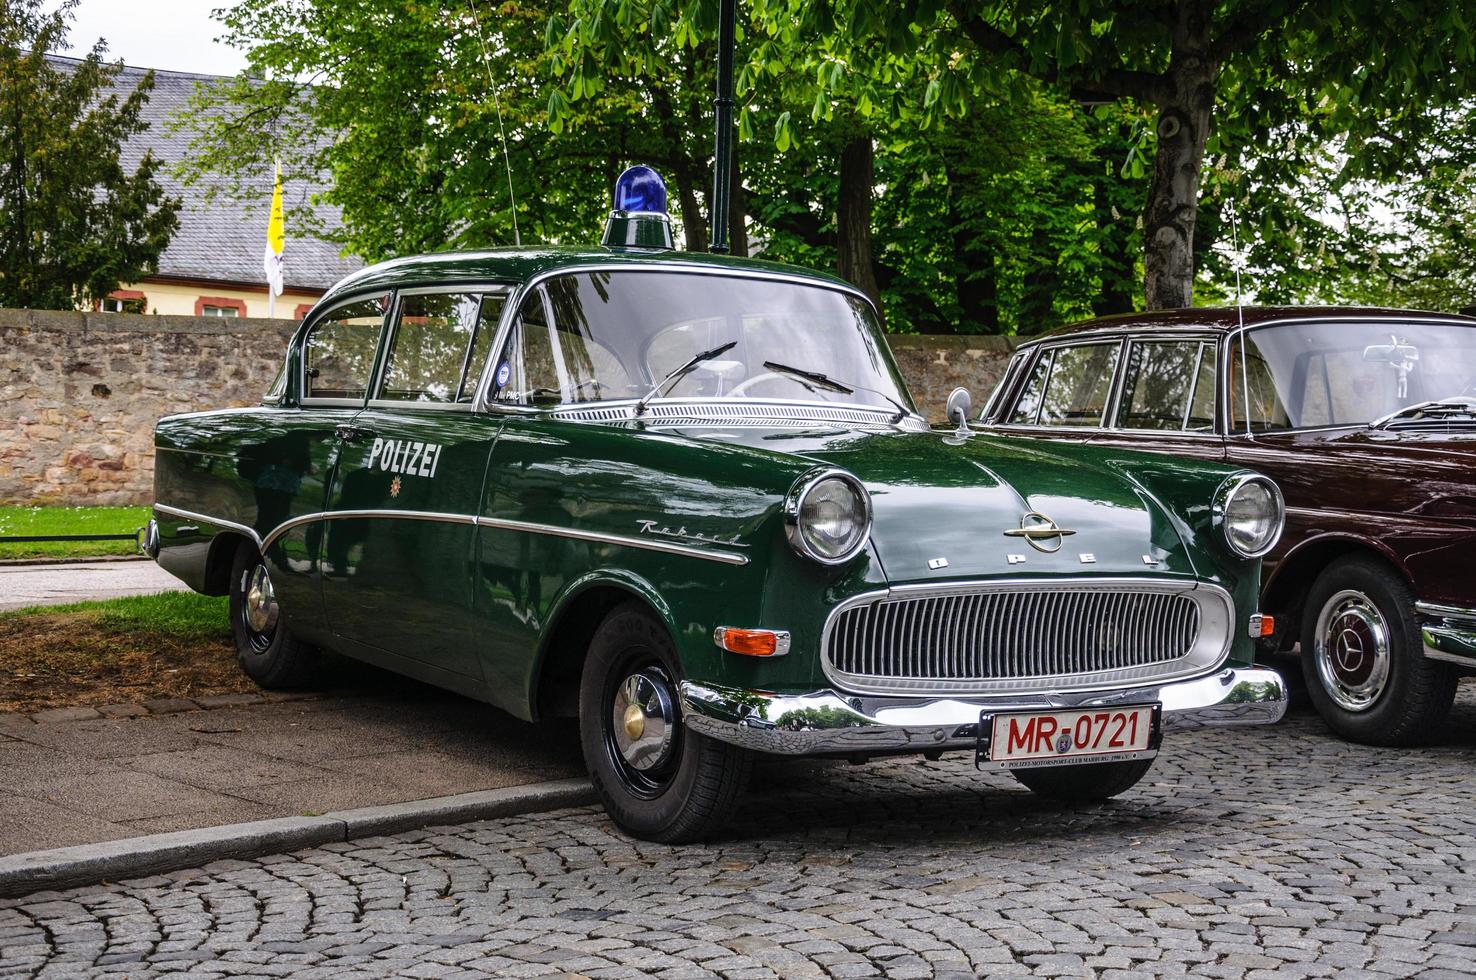 fulda, alemanha - carro retrô de luxo da polícia opel kapitan de maio de 2013 foto